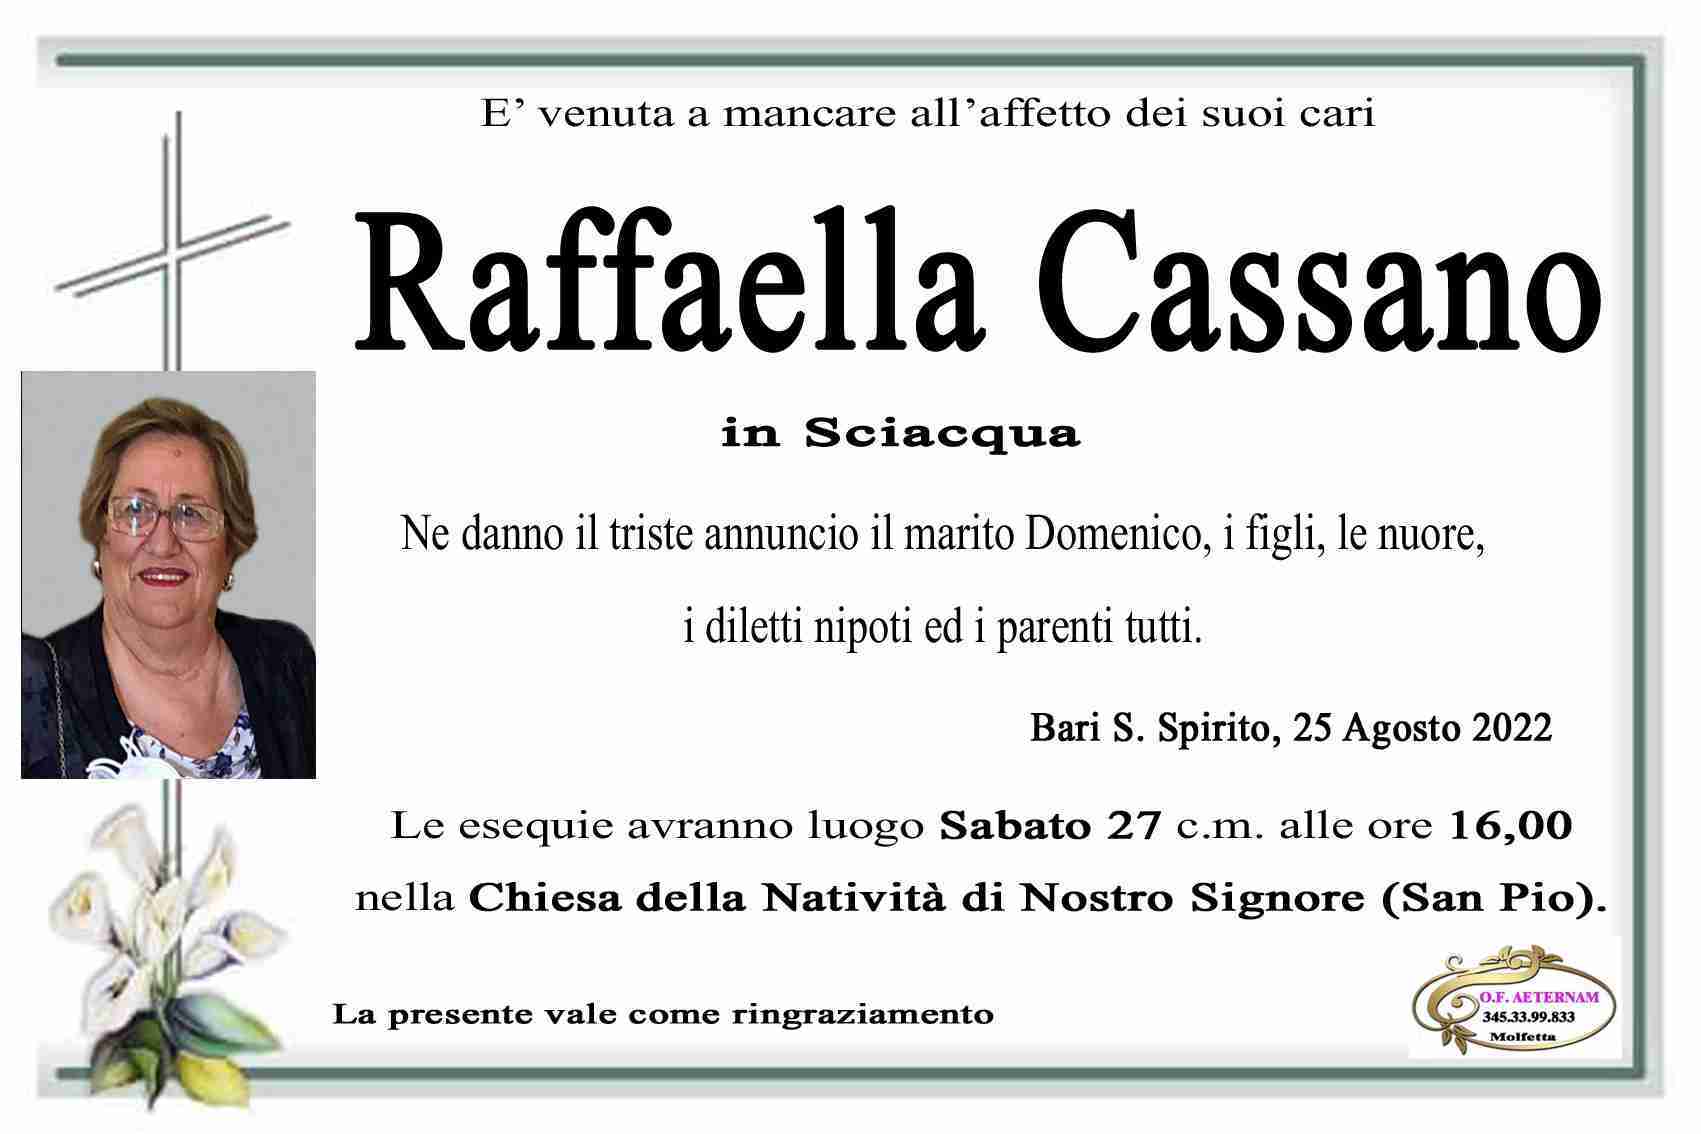 Raffaella Cassano